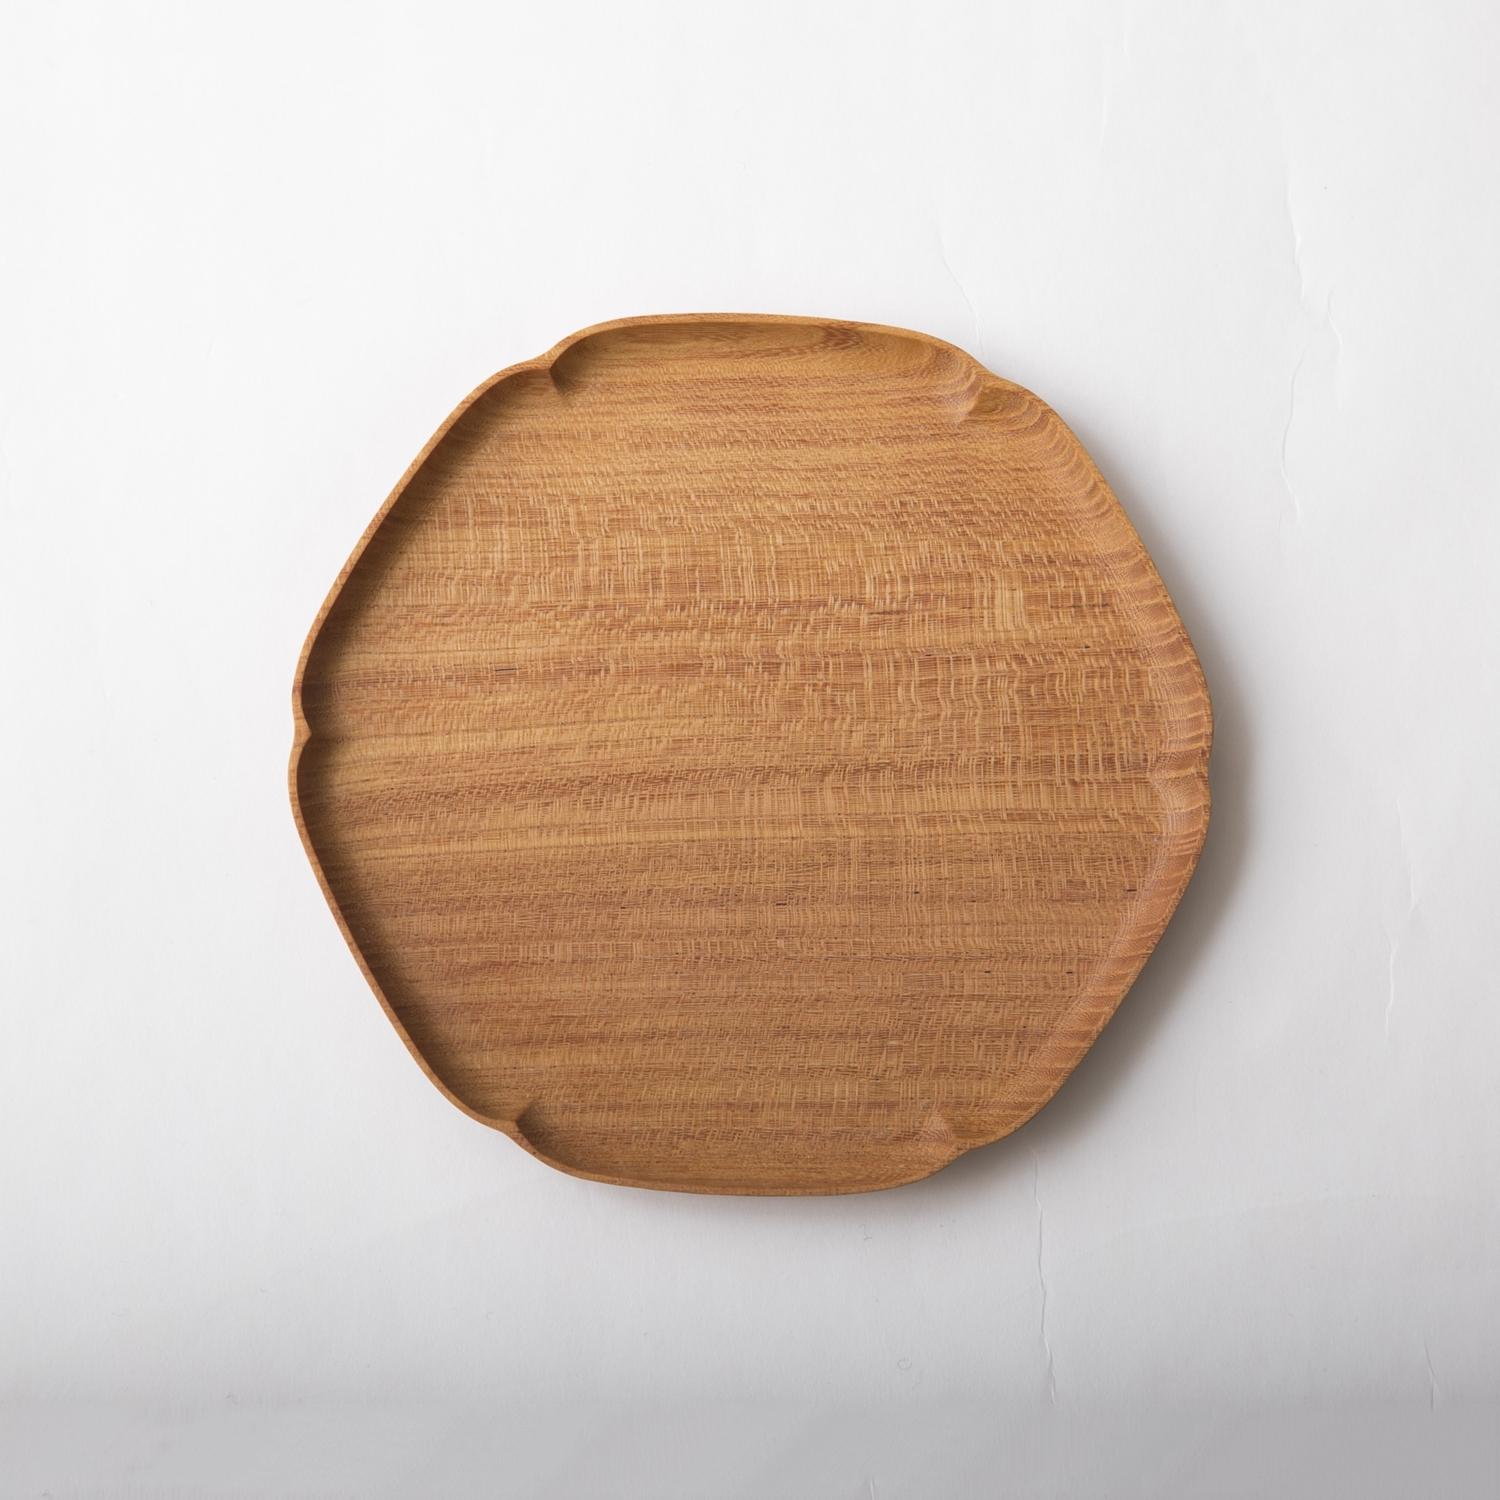 上等な 独創的 お盆 皿 敷物をこれ一枚で 四十沢木材工芸 小 KITO 雪輪盆